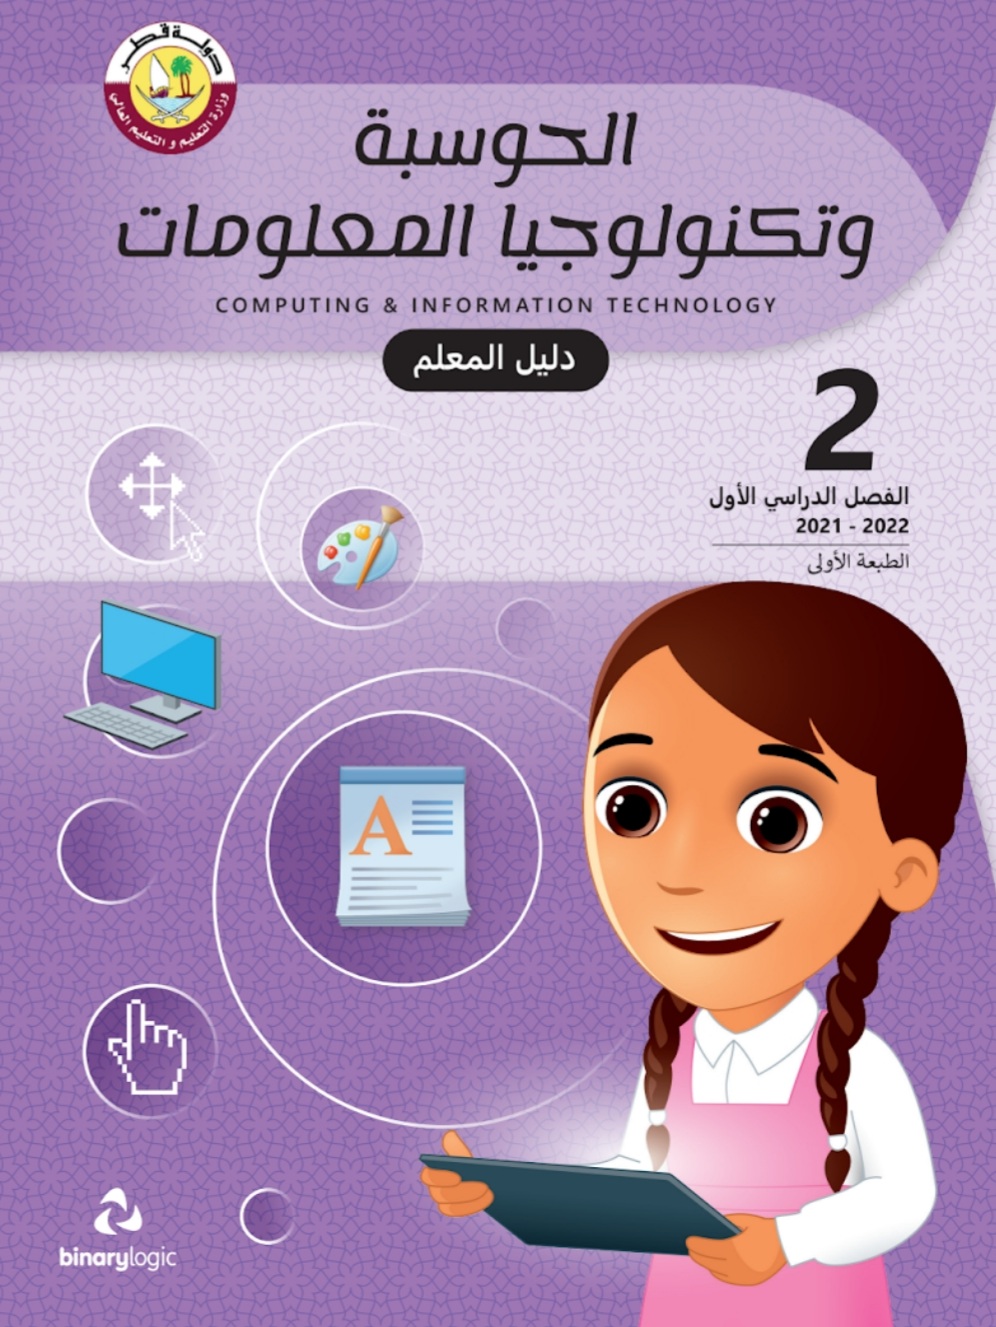 دليل معلم الحوسبة وتكنولوجيا المعلومات الثاني فصل اول منهاج قطر